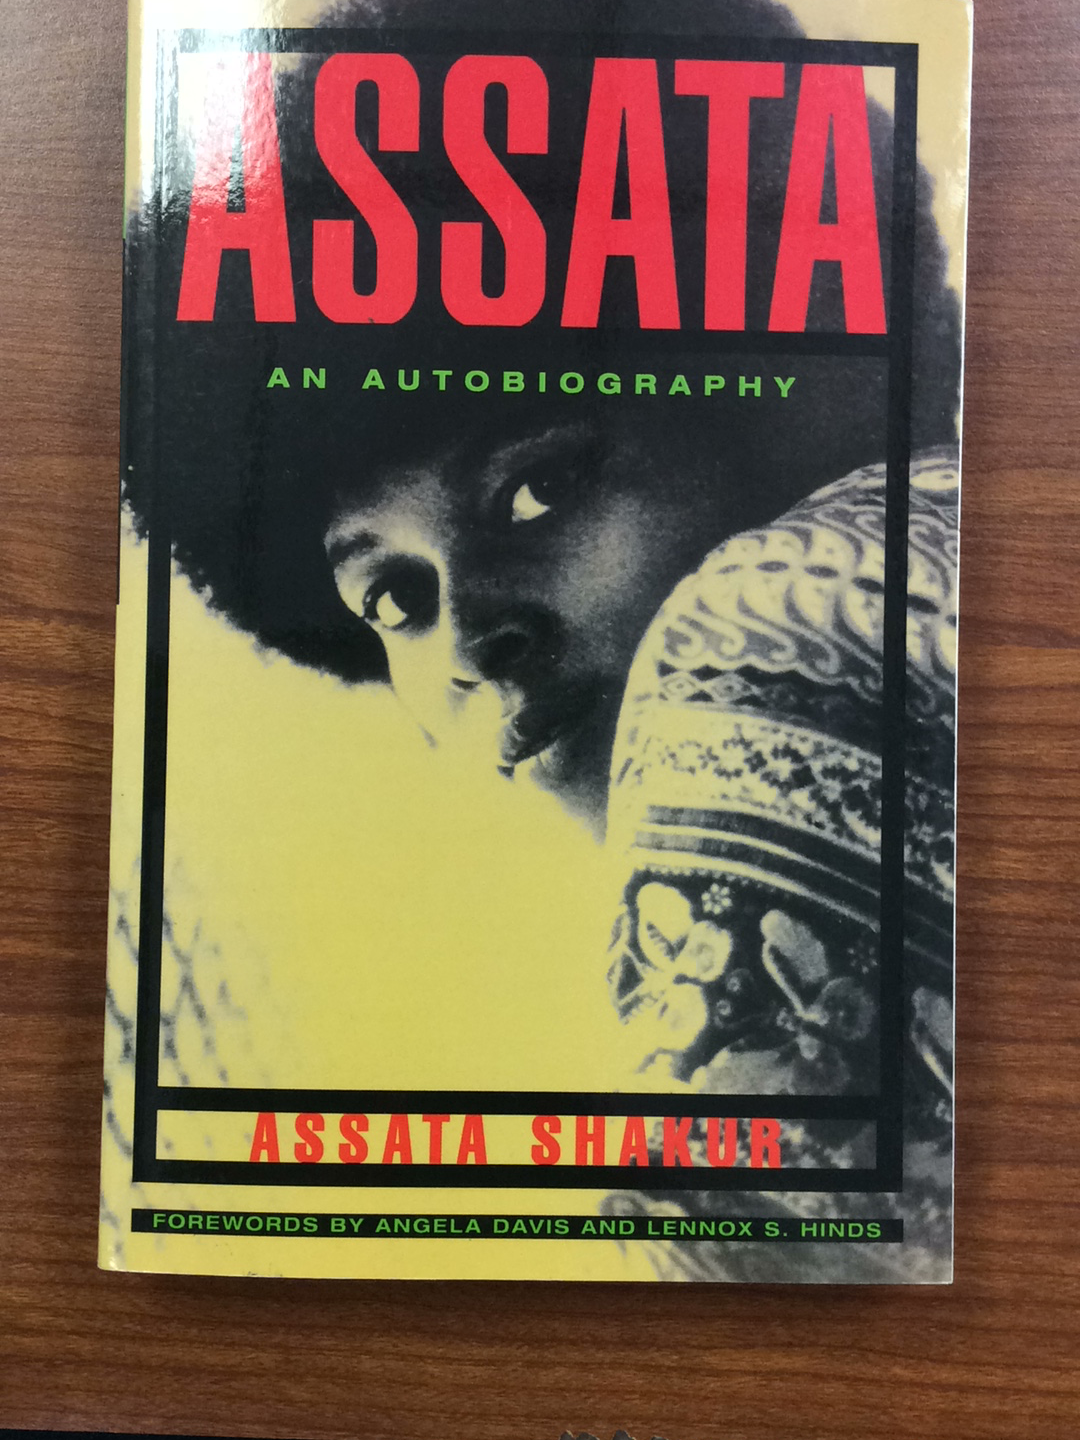 Assata- An Autobiography (paperback)